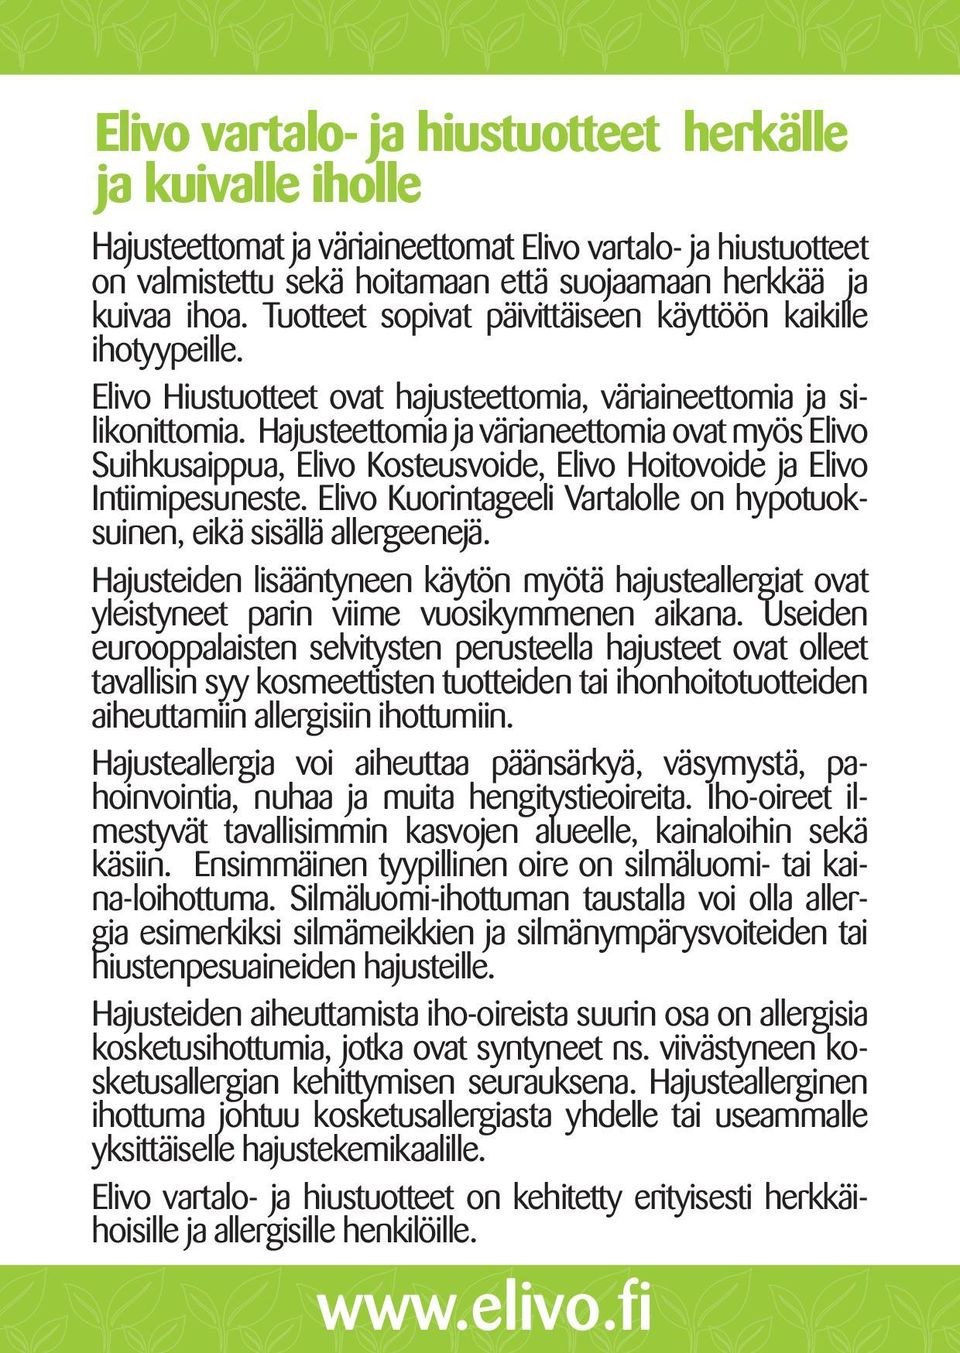 Hajusteettomia ja värianeettomia ovat myös Elivo Suihkusaippua, Elivo Kosteusvoide, Elivo Hoitovoide ja Elivo Intiimipesuneste.